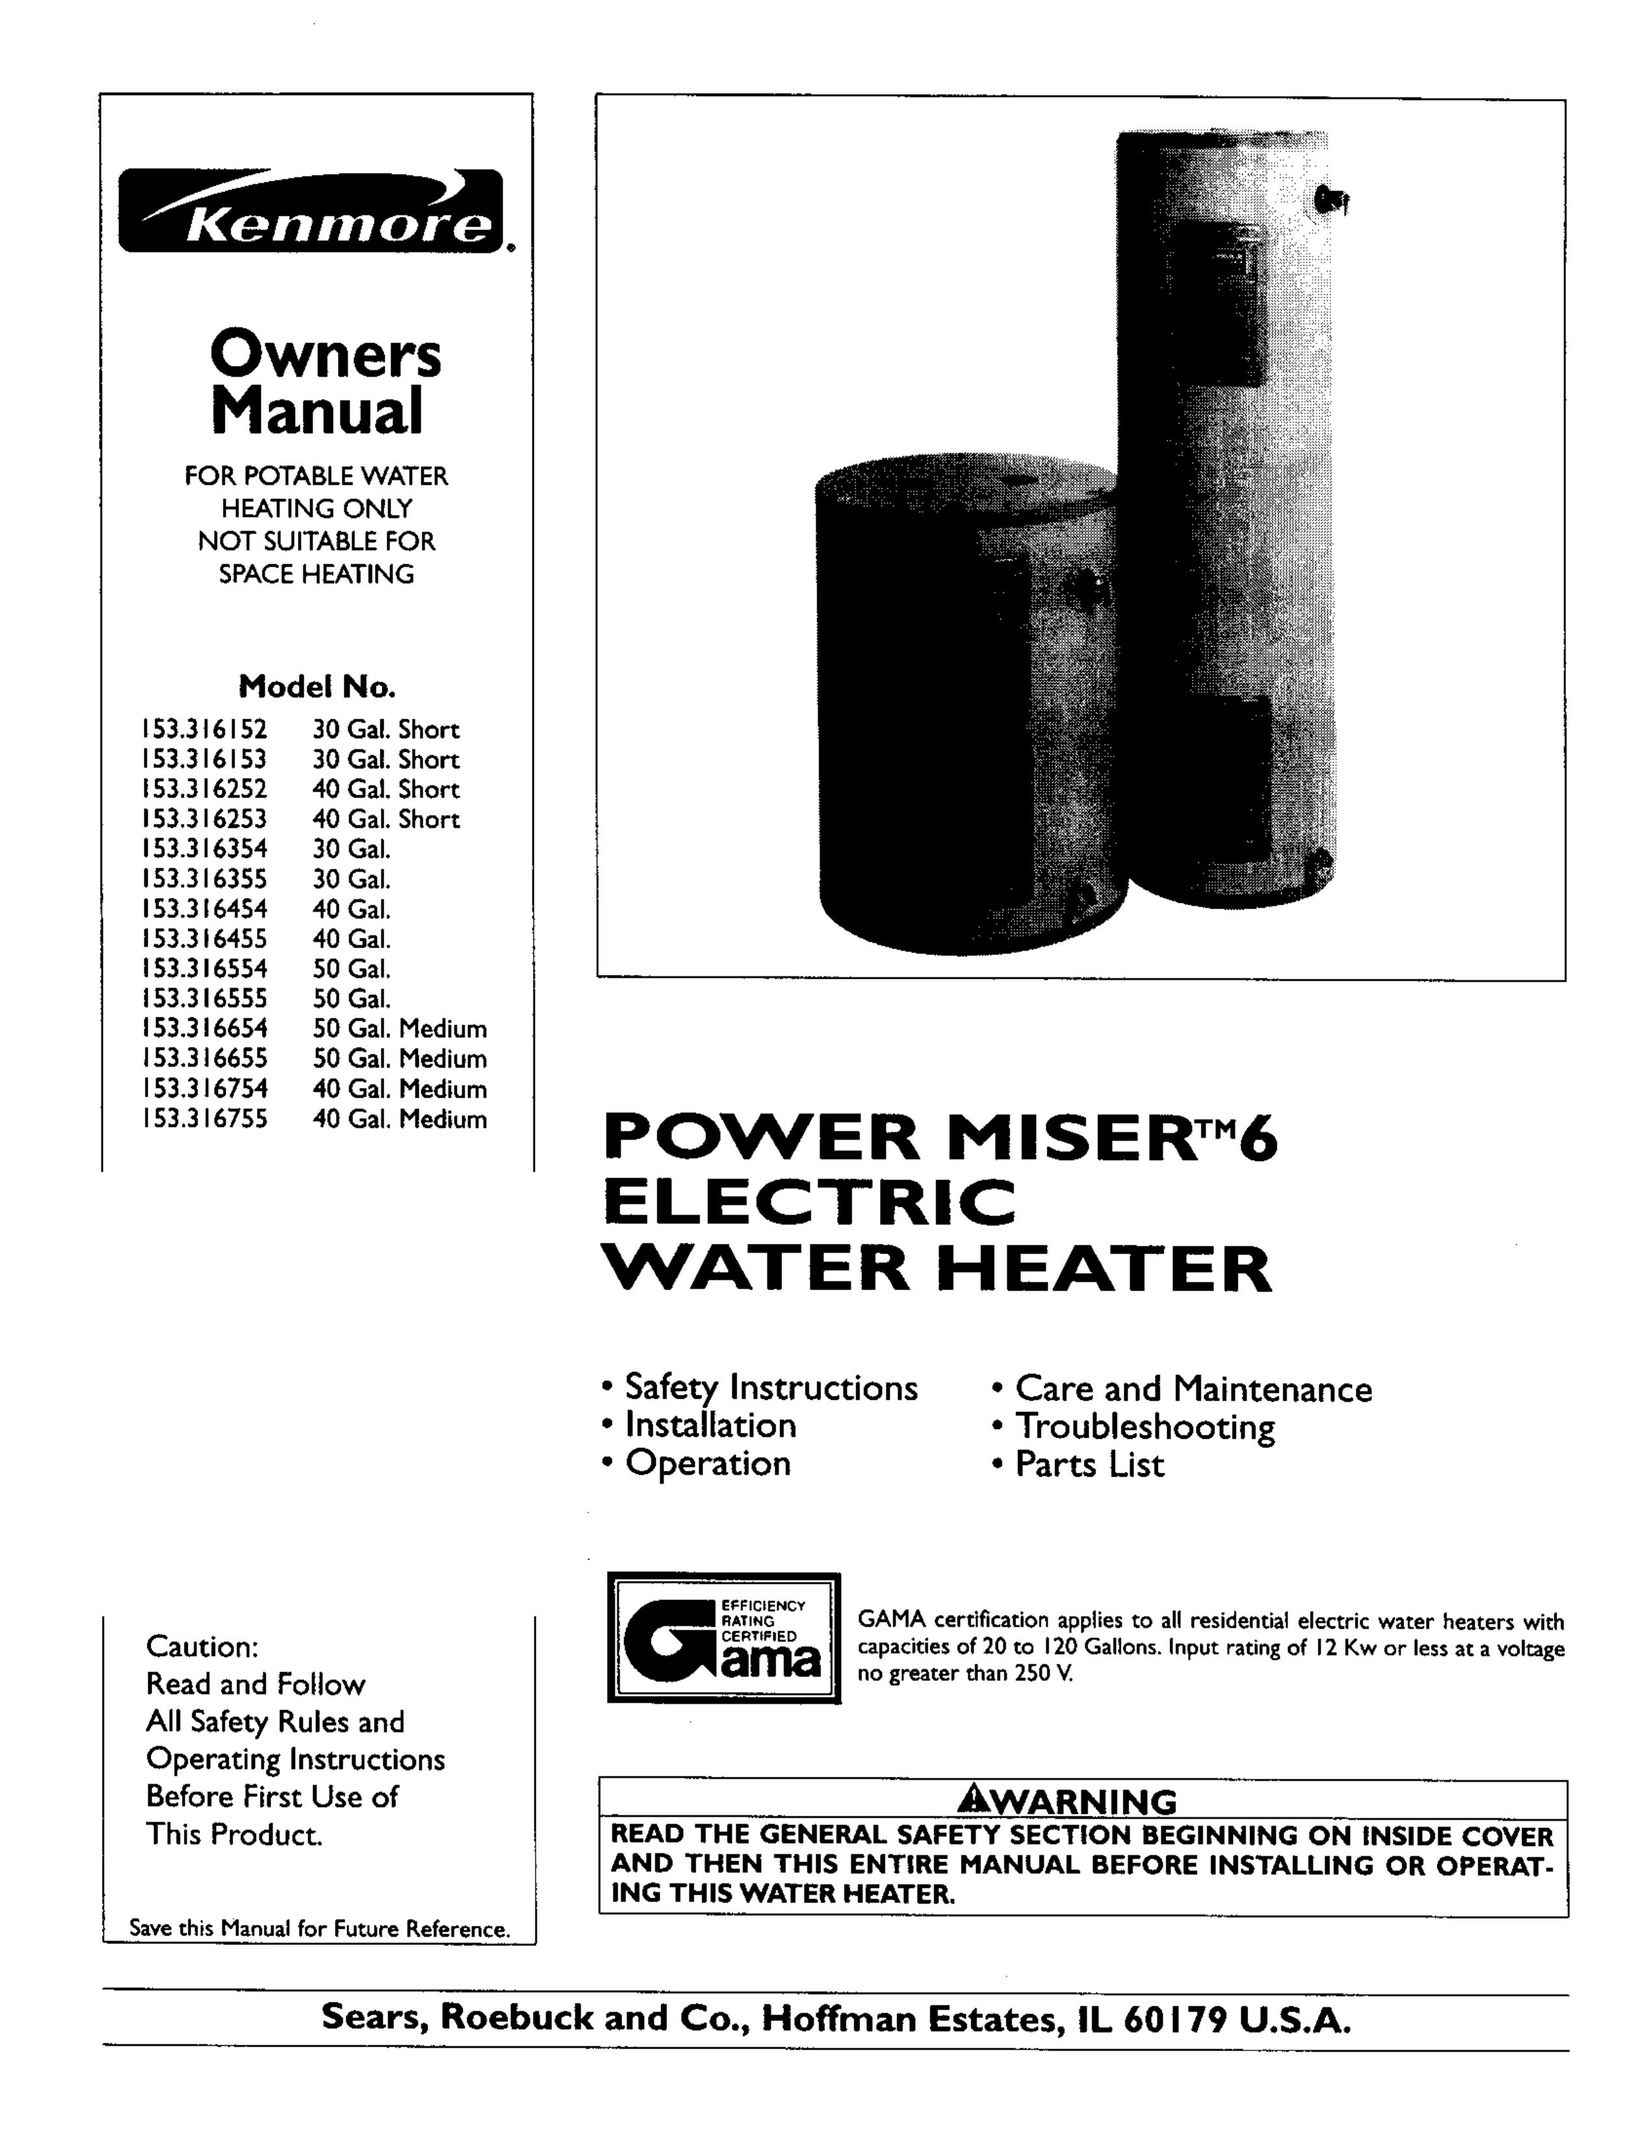 Kenmore 153.316654 Water Heater User Manual